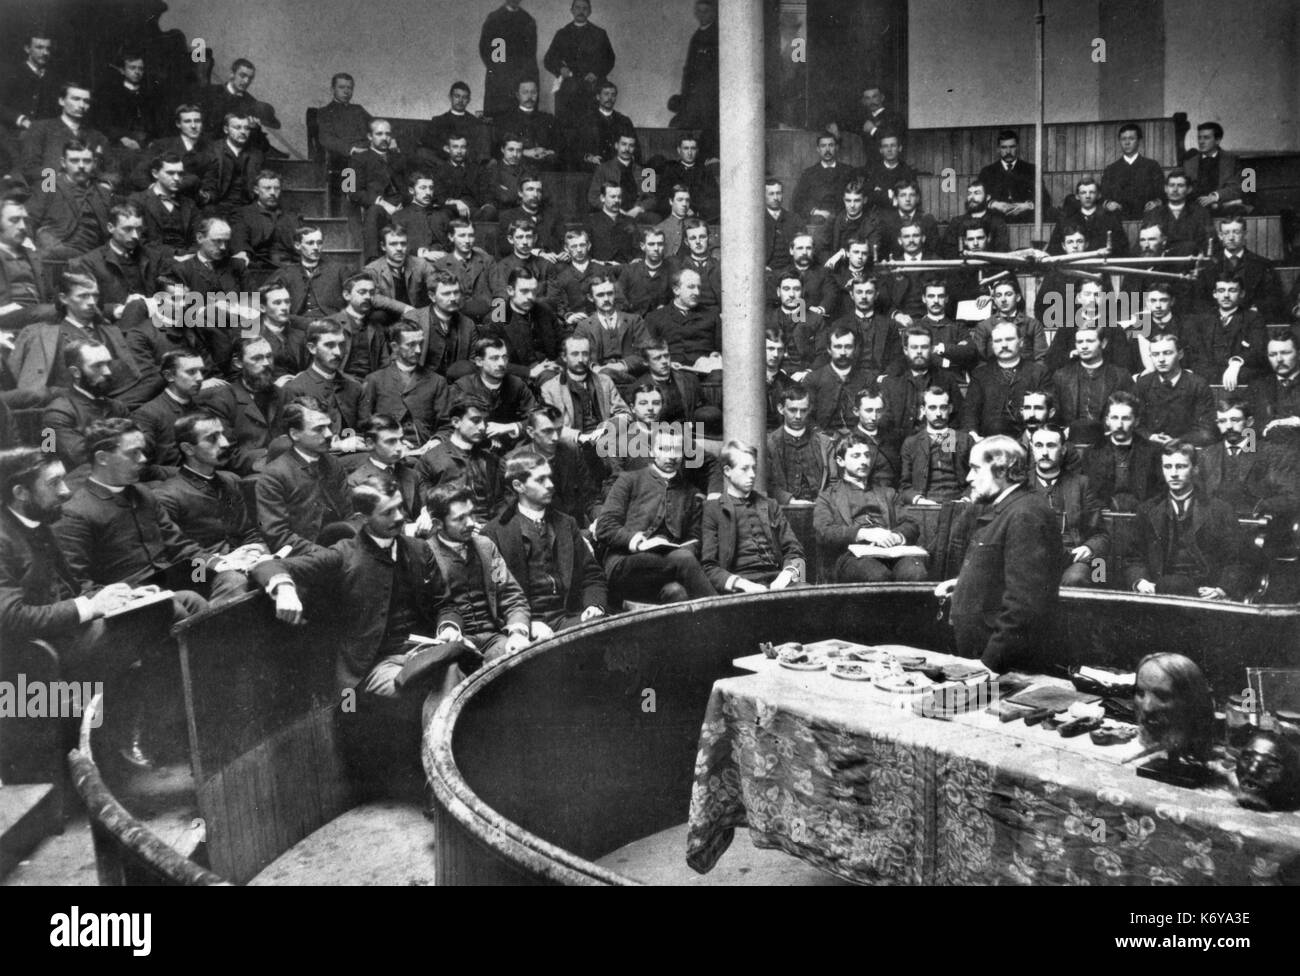 Conférence à l'Université de Pennsylvania School of Medicine en 1888, lorsque l'école était déjà 123 ans. Philadelphie, Pennsylvanie, 1888. Banque D'Images